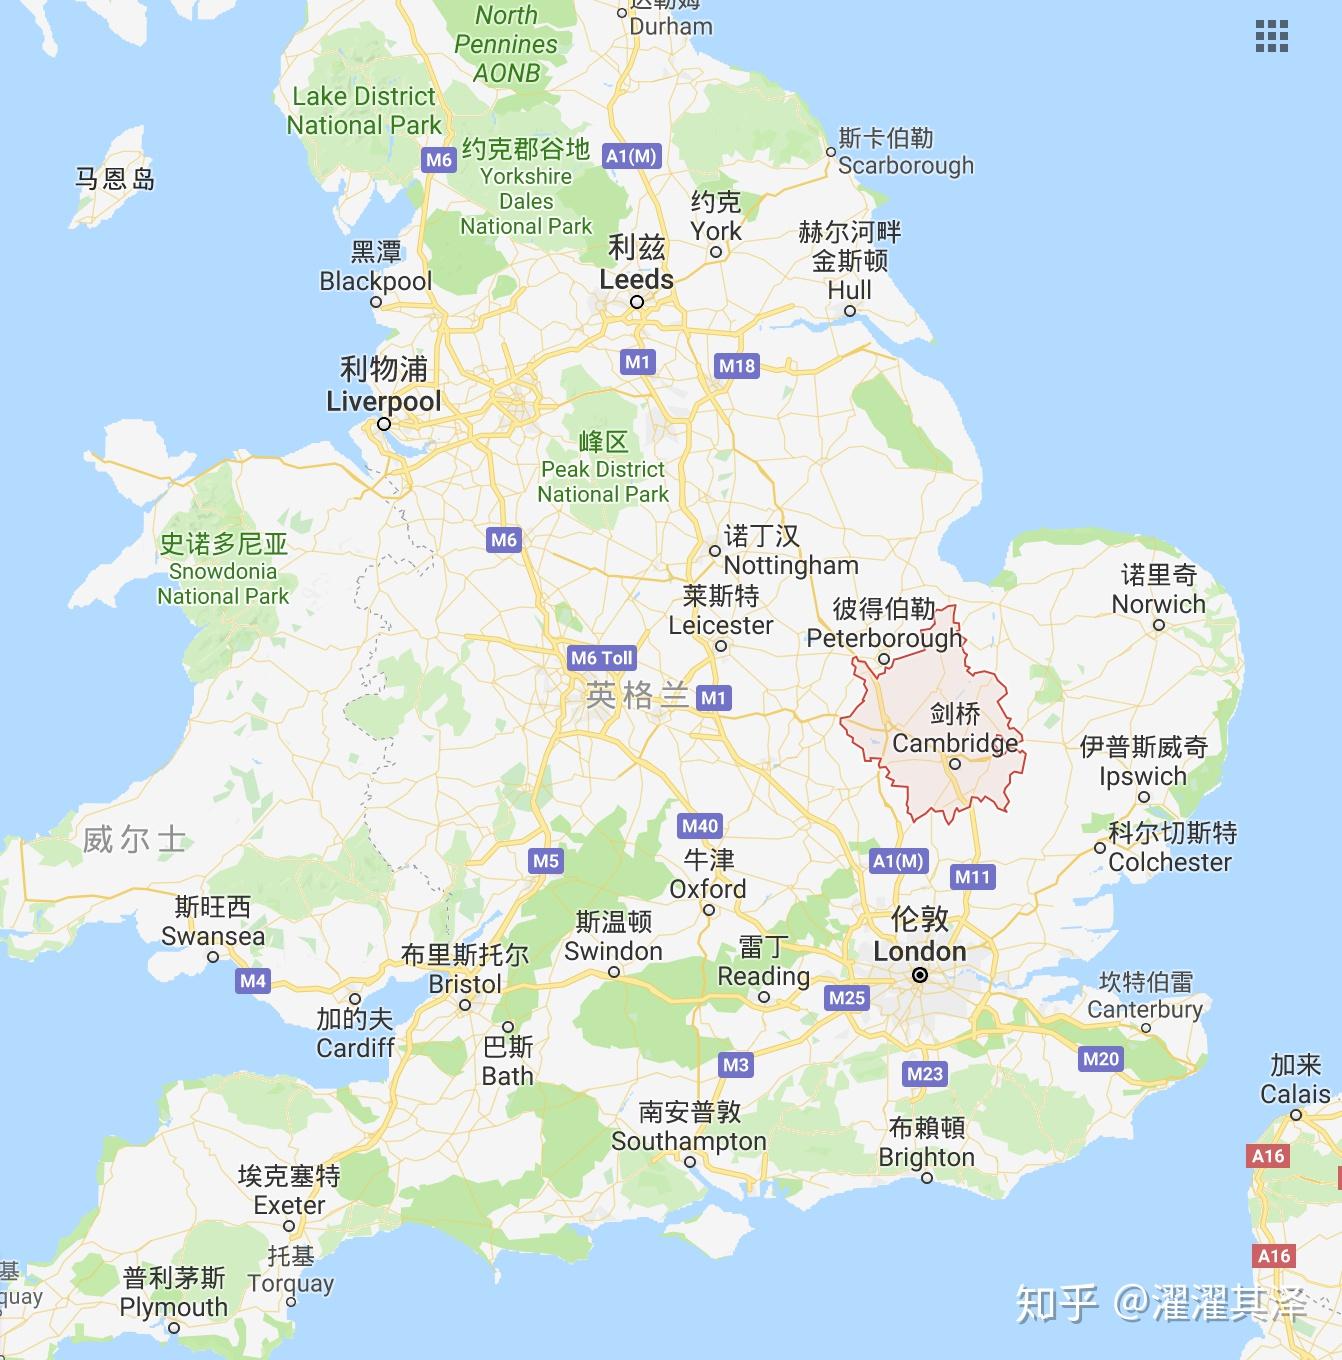 英国地图 - 英国地图高清版 - 英国地图中文版